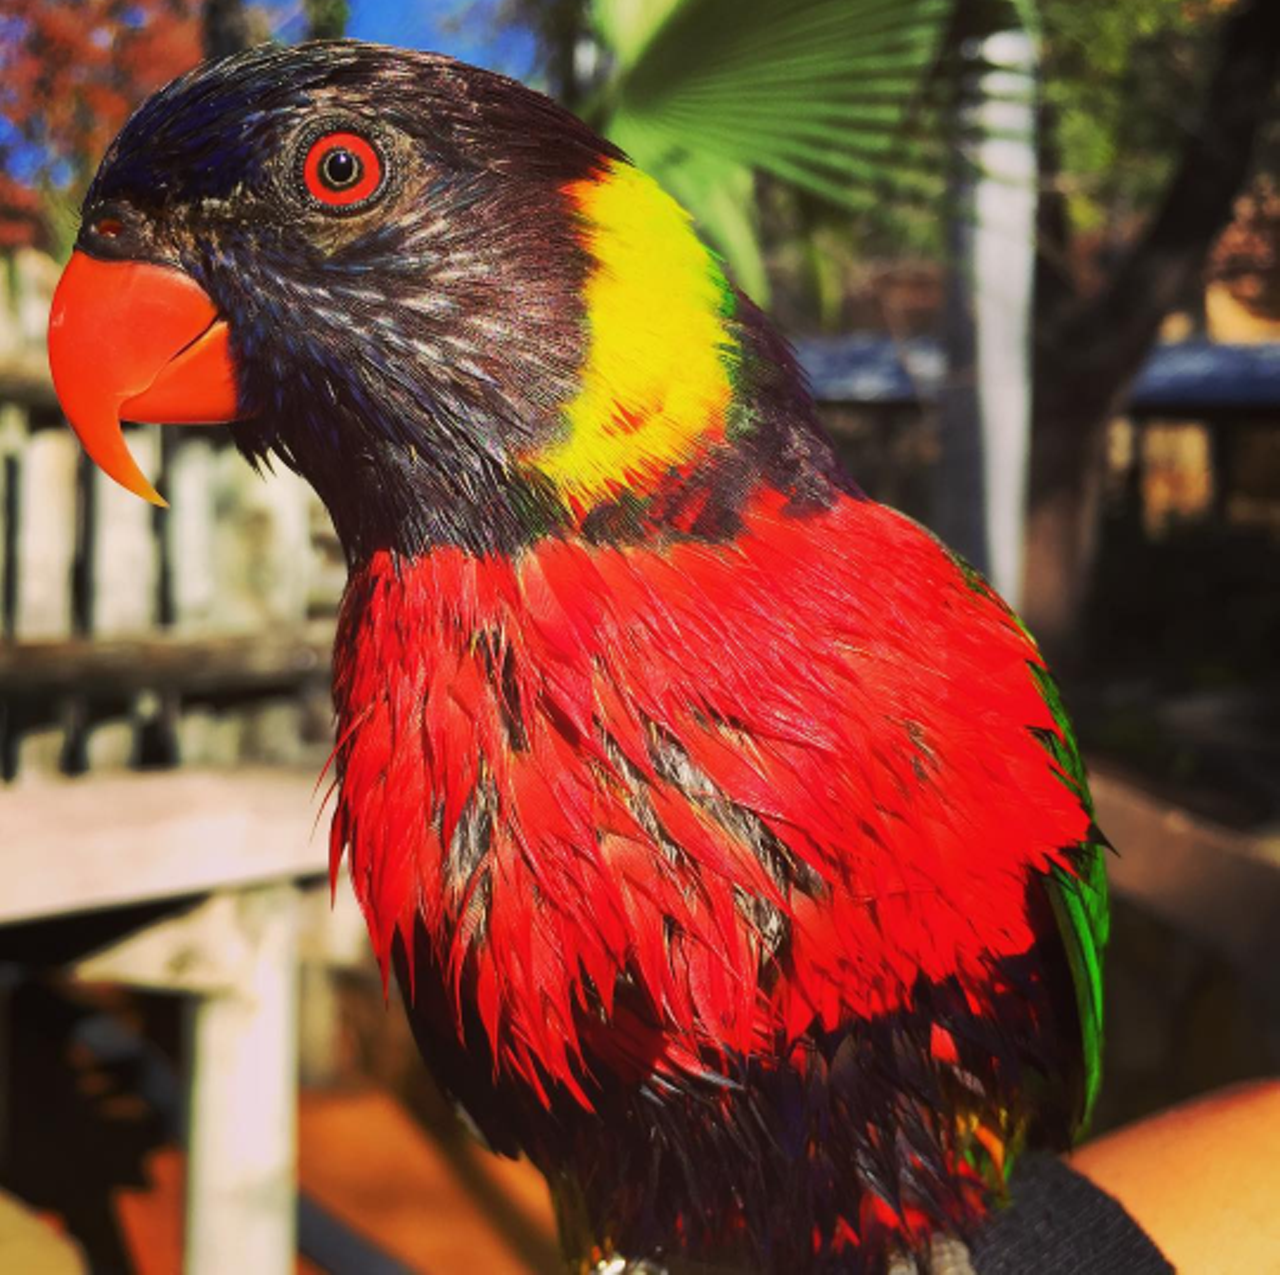  San Antonio Zoo
Photo via Instagram/sanantoniozoo